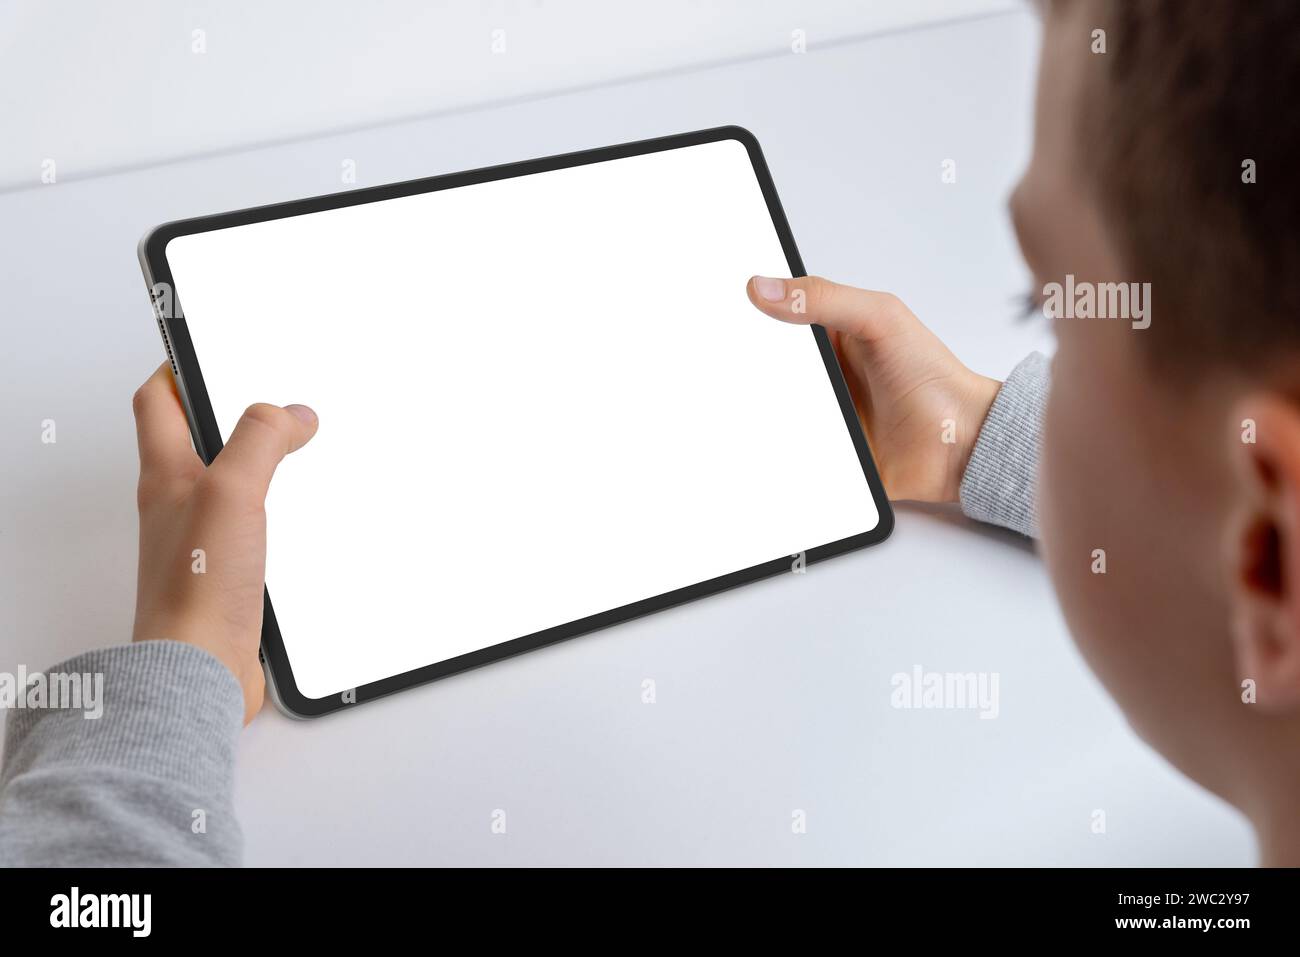 Primo piano delle mani di un ragazzo che tiene un tablet mockup. Impegnato nel lavoro, presenta uno schermo bianco isolato per la presentazione delle app. Tecnologia moderna per bambini Foto Stock